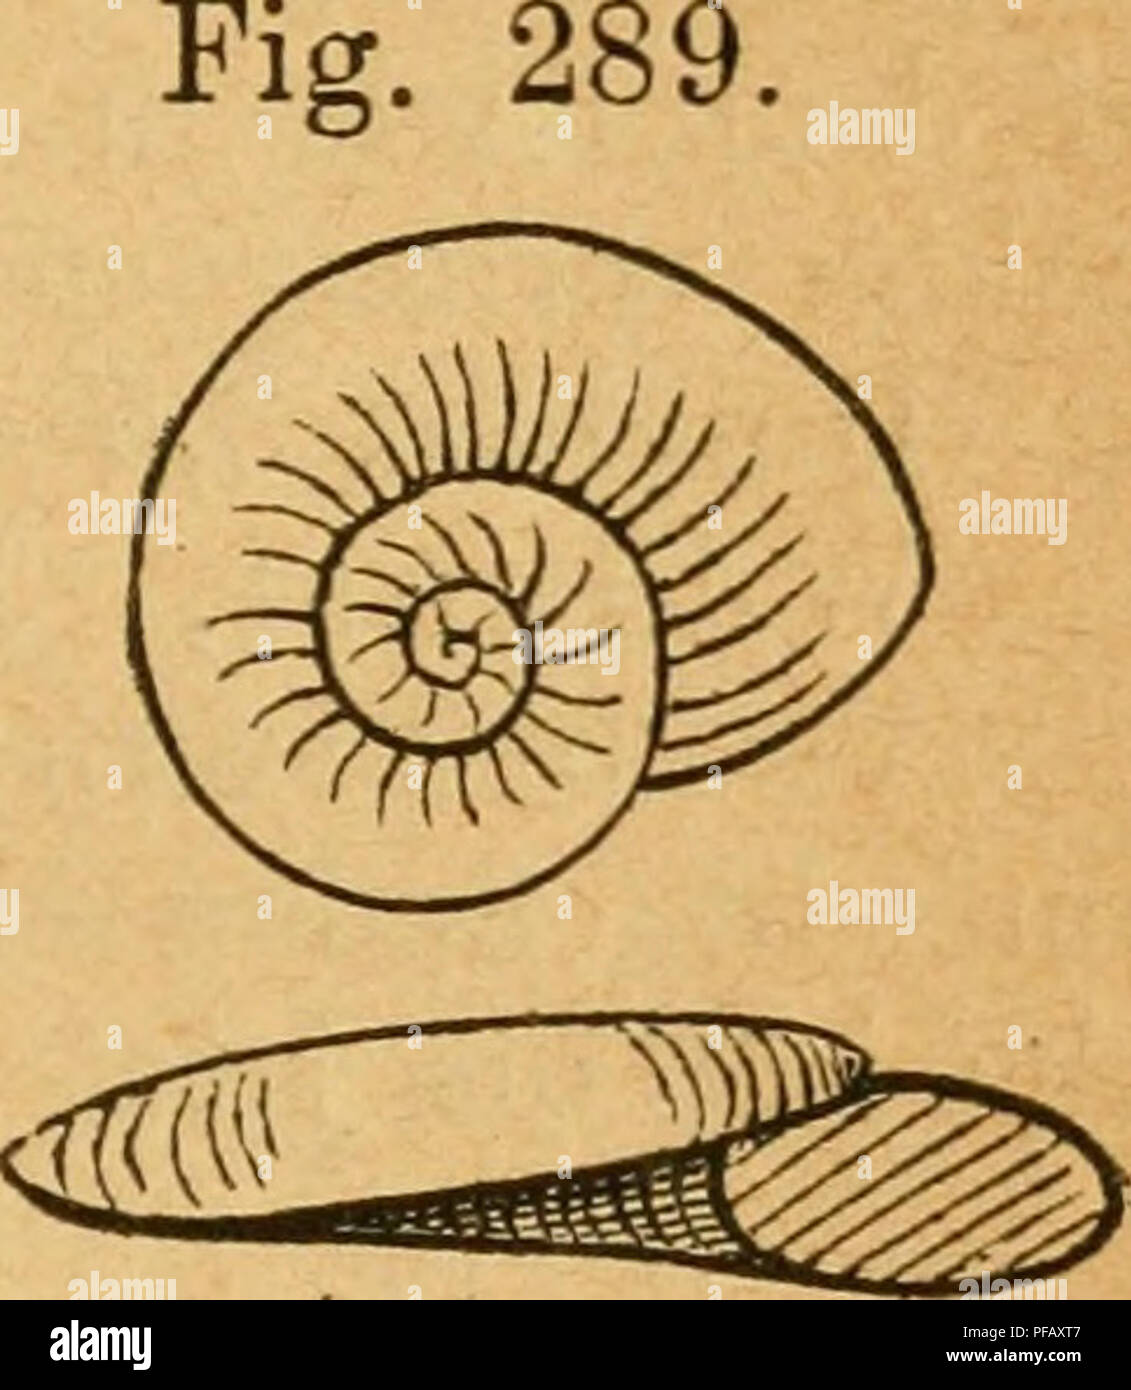 . Deutsche excursions-mollusken-fauna. Mollusks. 429 1. Var. nautlleuS, Linne (Turbo nautneus, Llnne, syst. nat. ed. XII 1767 p. 1241). Plan, inibricatus, Drap., bist. moll. p. 44. — crista, var. nautileus, Westerlund, Malak. Blätter XXII. p. 115 t. 4 fig. 28—30. Gehäuse: festschalig, von weissgrauer Farbe; Umgänge stumpf gekielt, Kiel fast in der Mitte gelegen, ober dem Kiele etwas flacher, unter dem Kiele mehf gewölbt; Oberfläche ohne Skulptur, nur sehr fein gestreift, Umgänge gedrückt - elliptisch, ohne markirten Kiel. Durchmesser 3 mm. PI. nautileus, 2. Var. CristatVS, Draparnaud, bist. mo Stock Photo